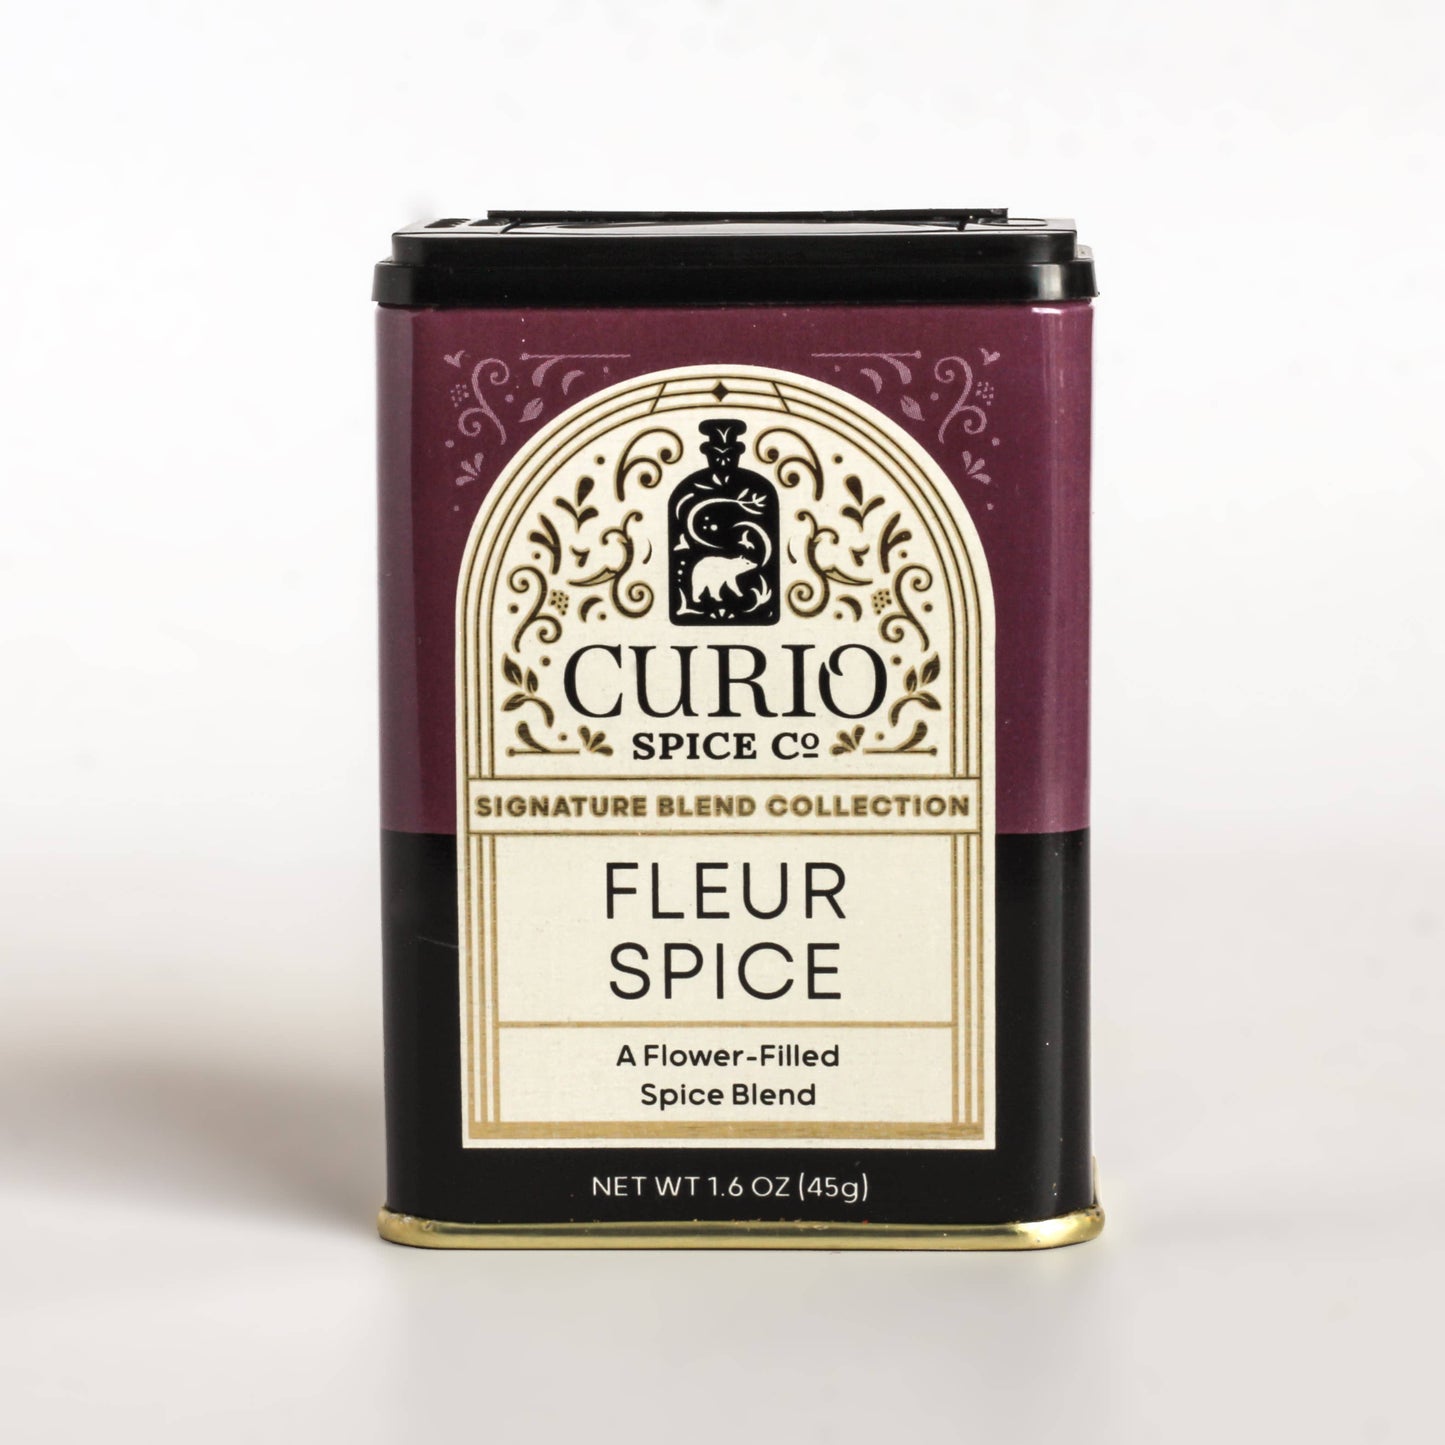 Fleur Spice - Curio Spice Co